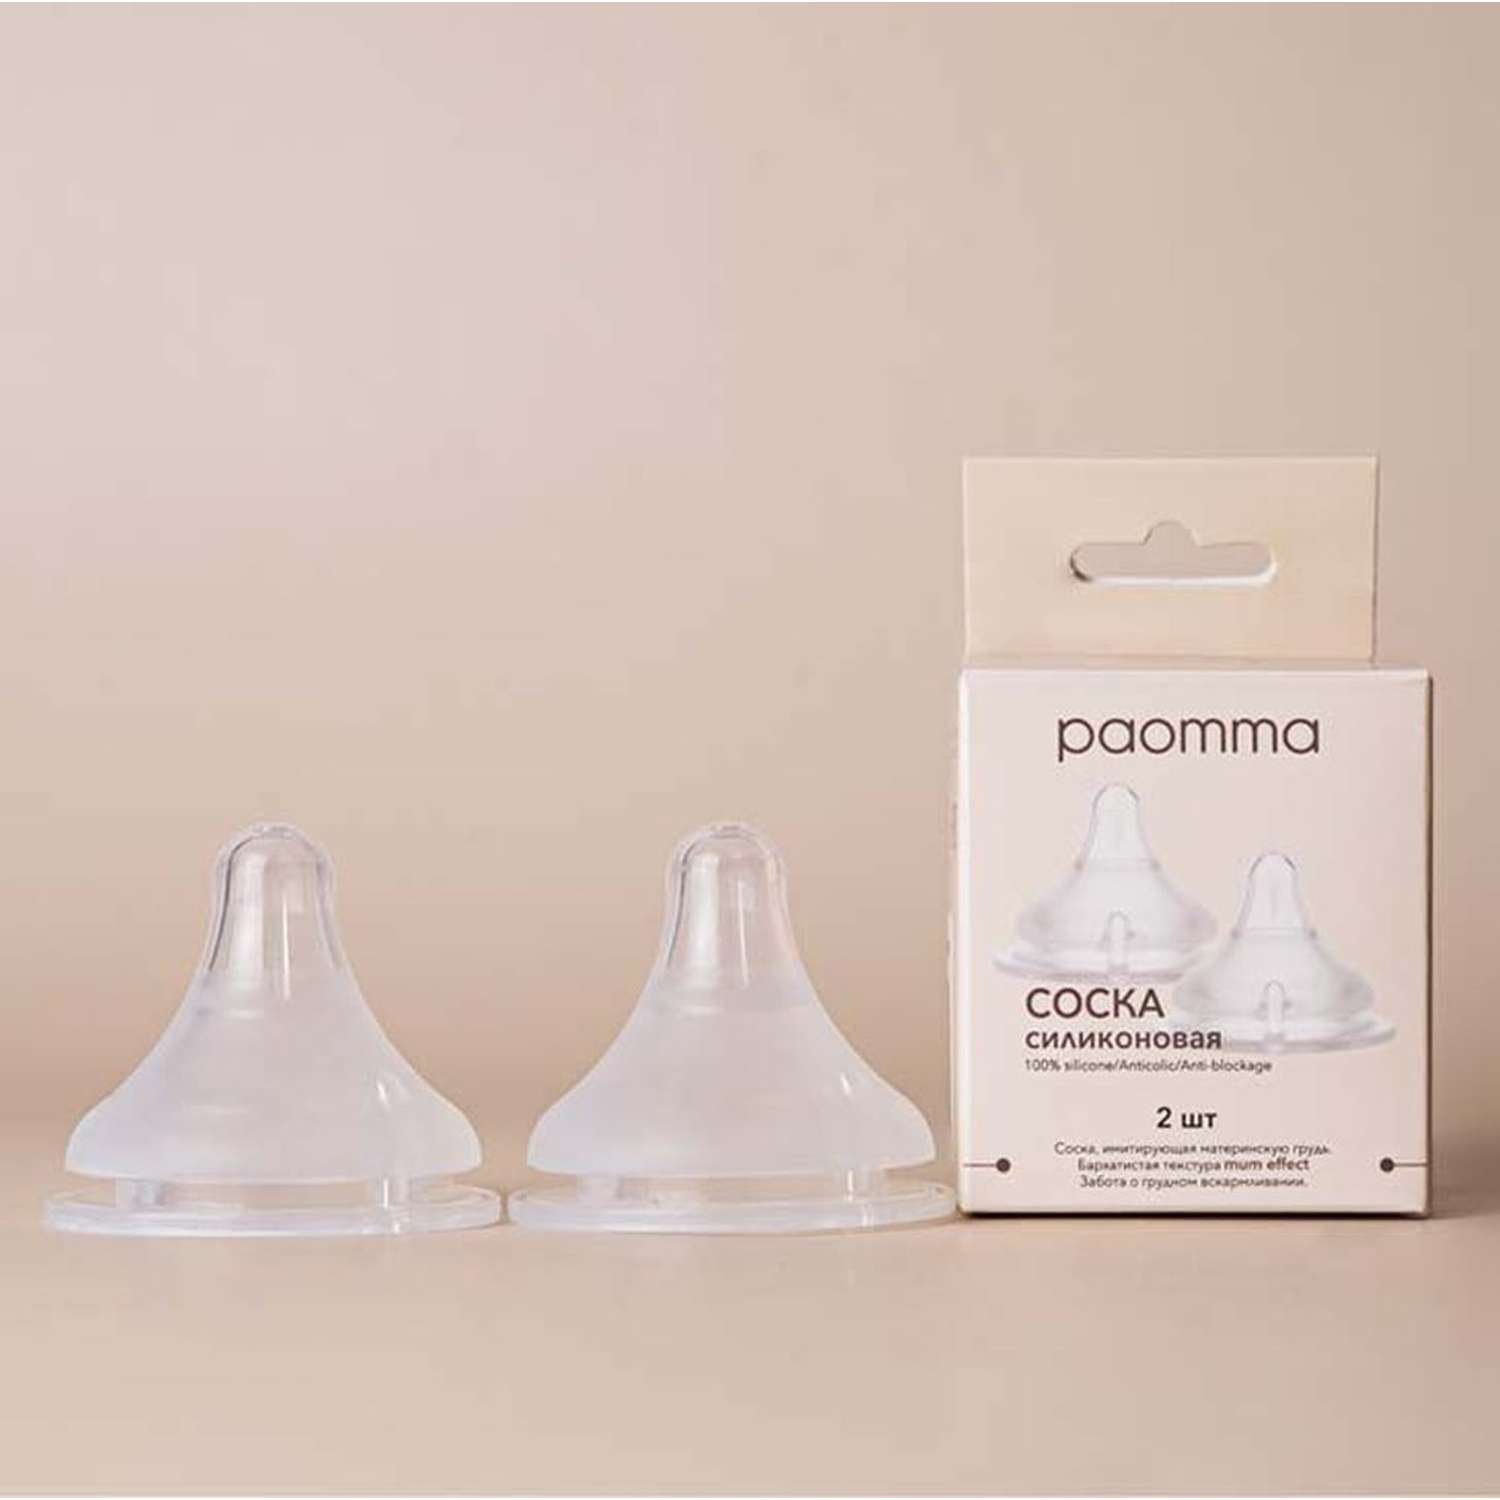 Соска на бутылочку paomma mum effect Anti Colic S 0-3 мес для новорожденных 2 шт - фото 6